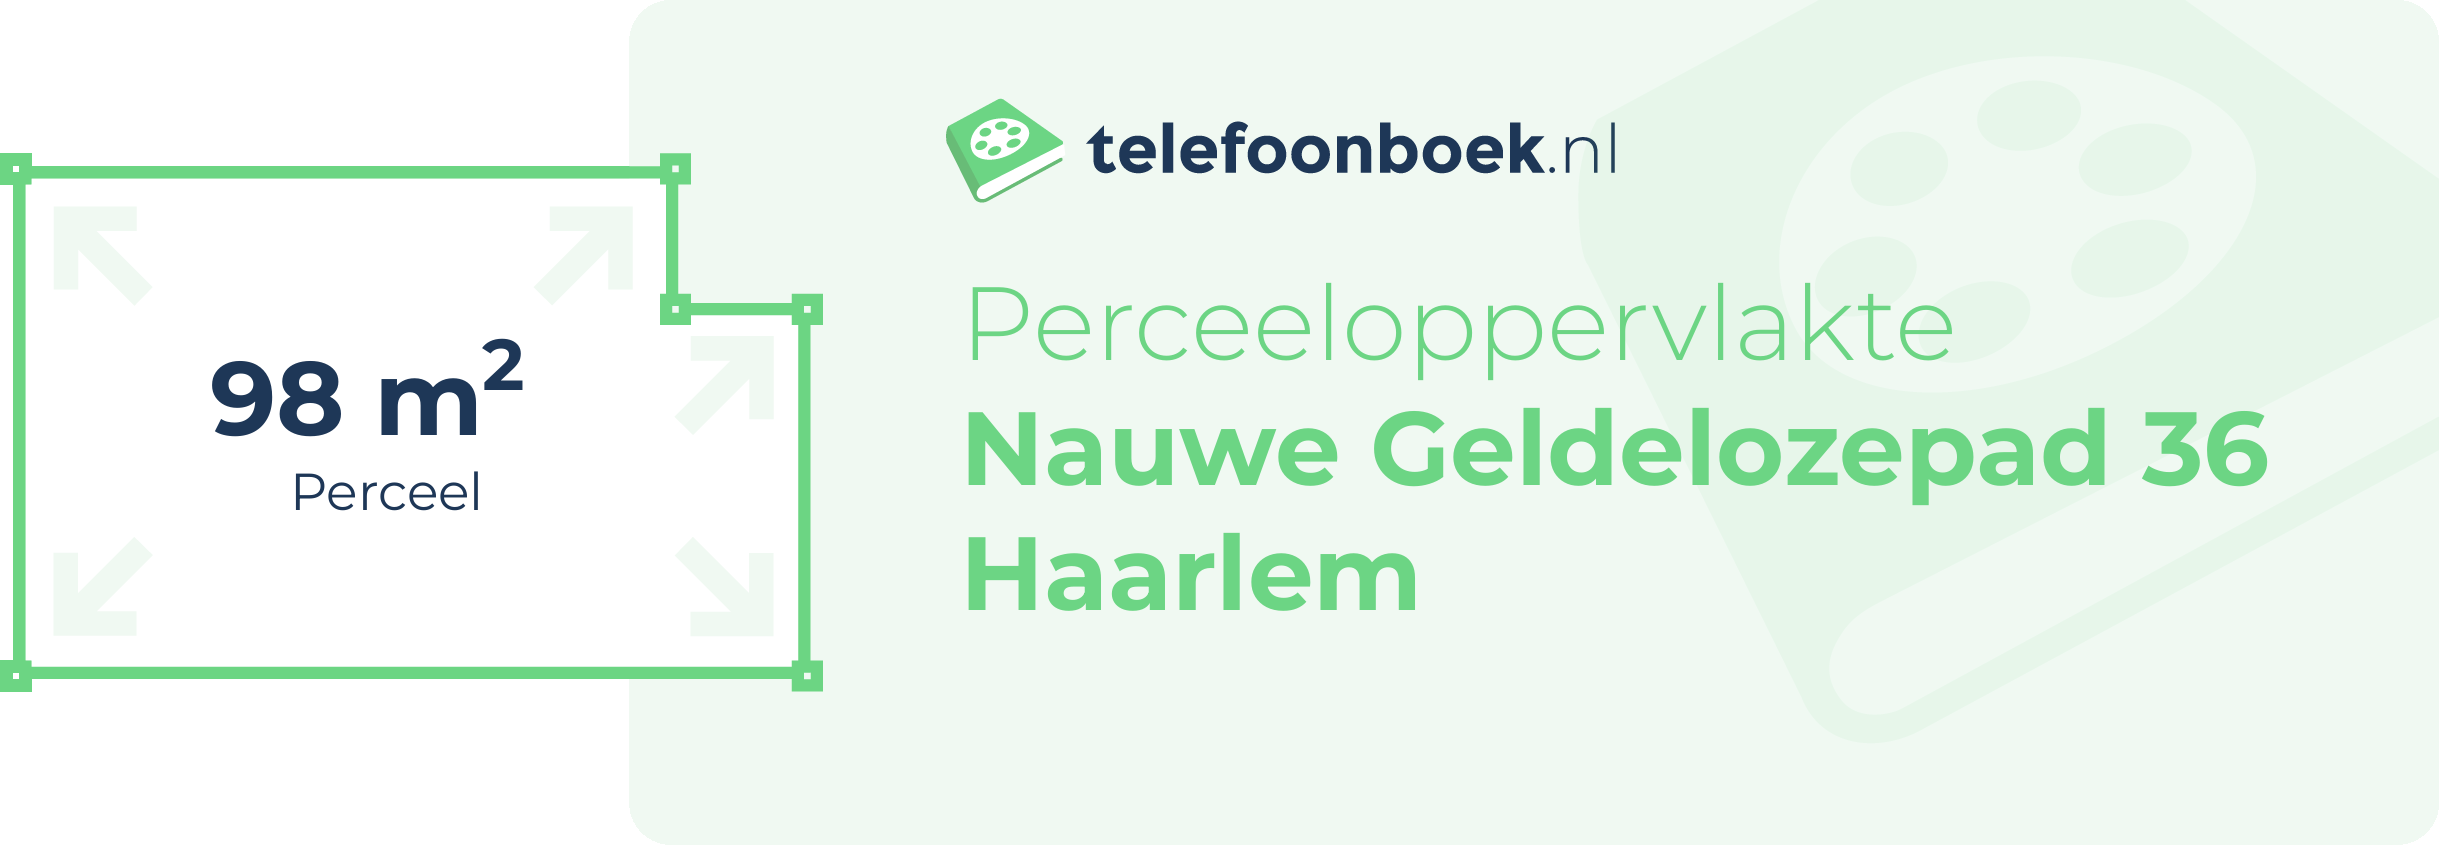 Perceeloppervlakte Nauwe Geldelozepad 36 Haarlem